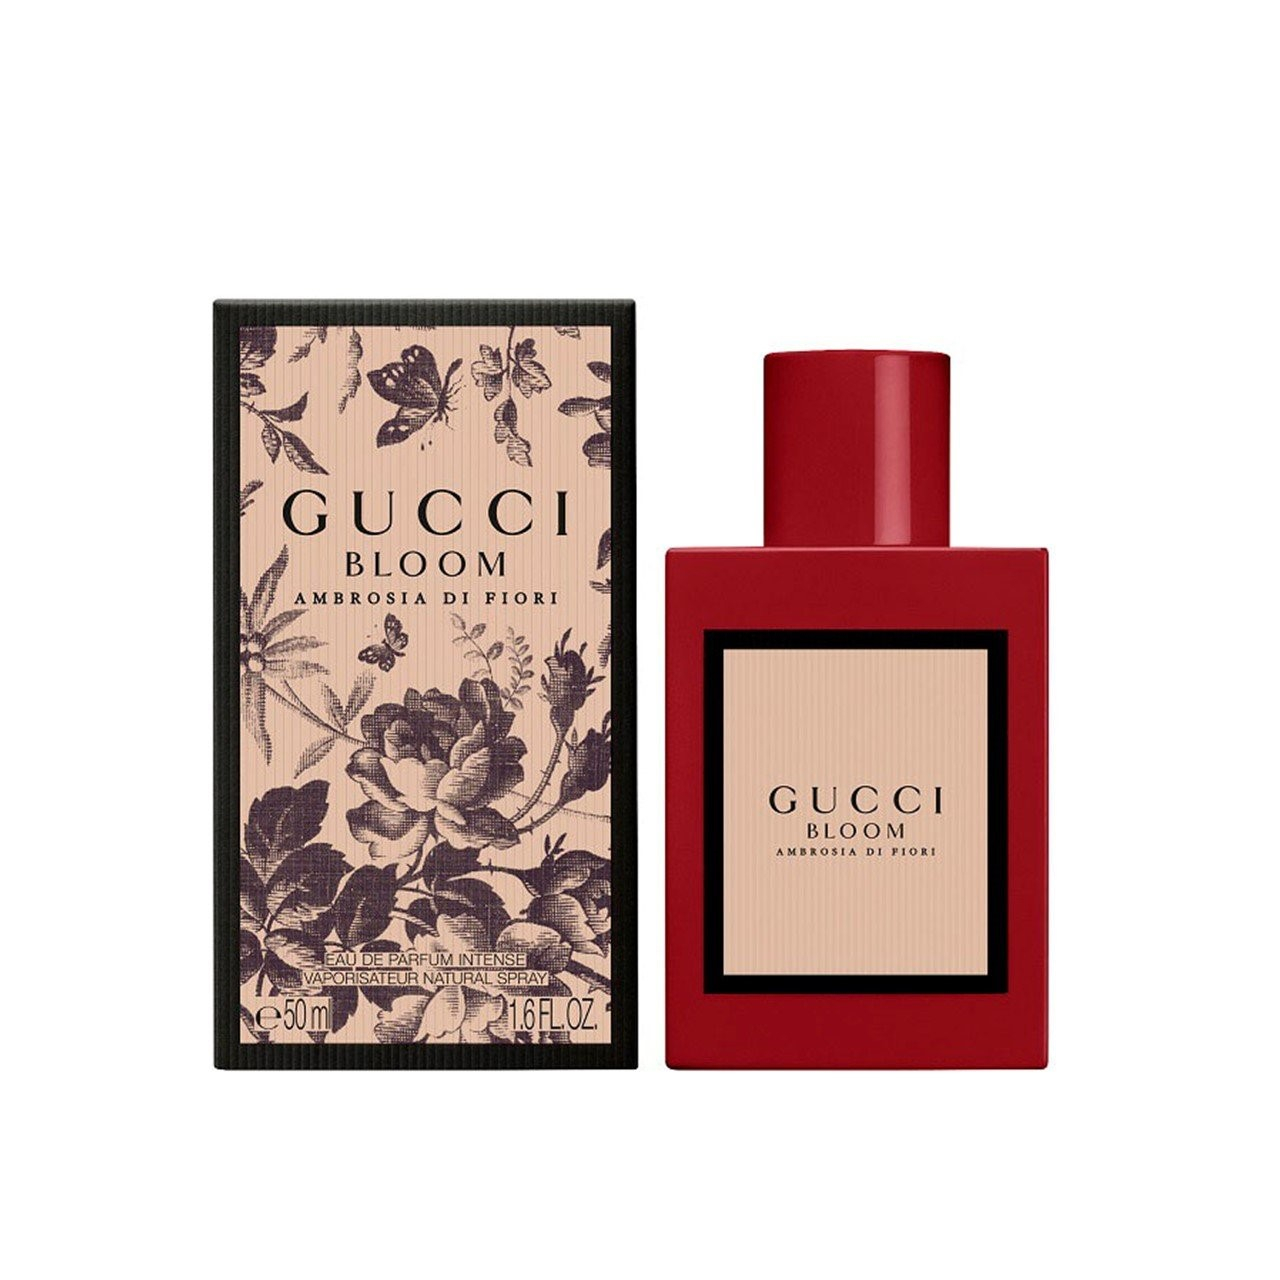 Buy Gucci Bloom Ambrosia Di USA Fiori · Intense de Eau Parfum